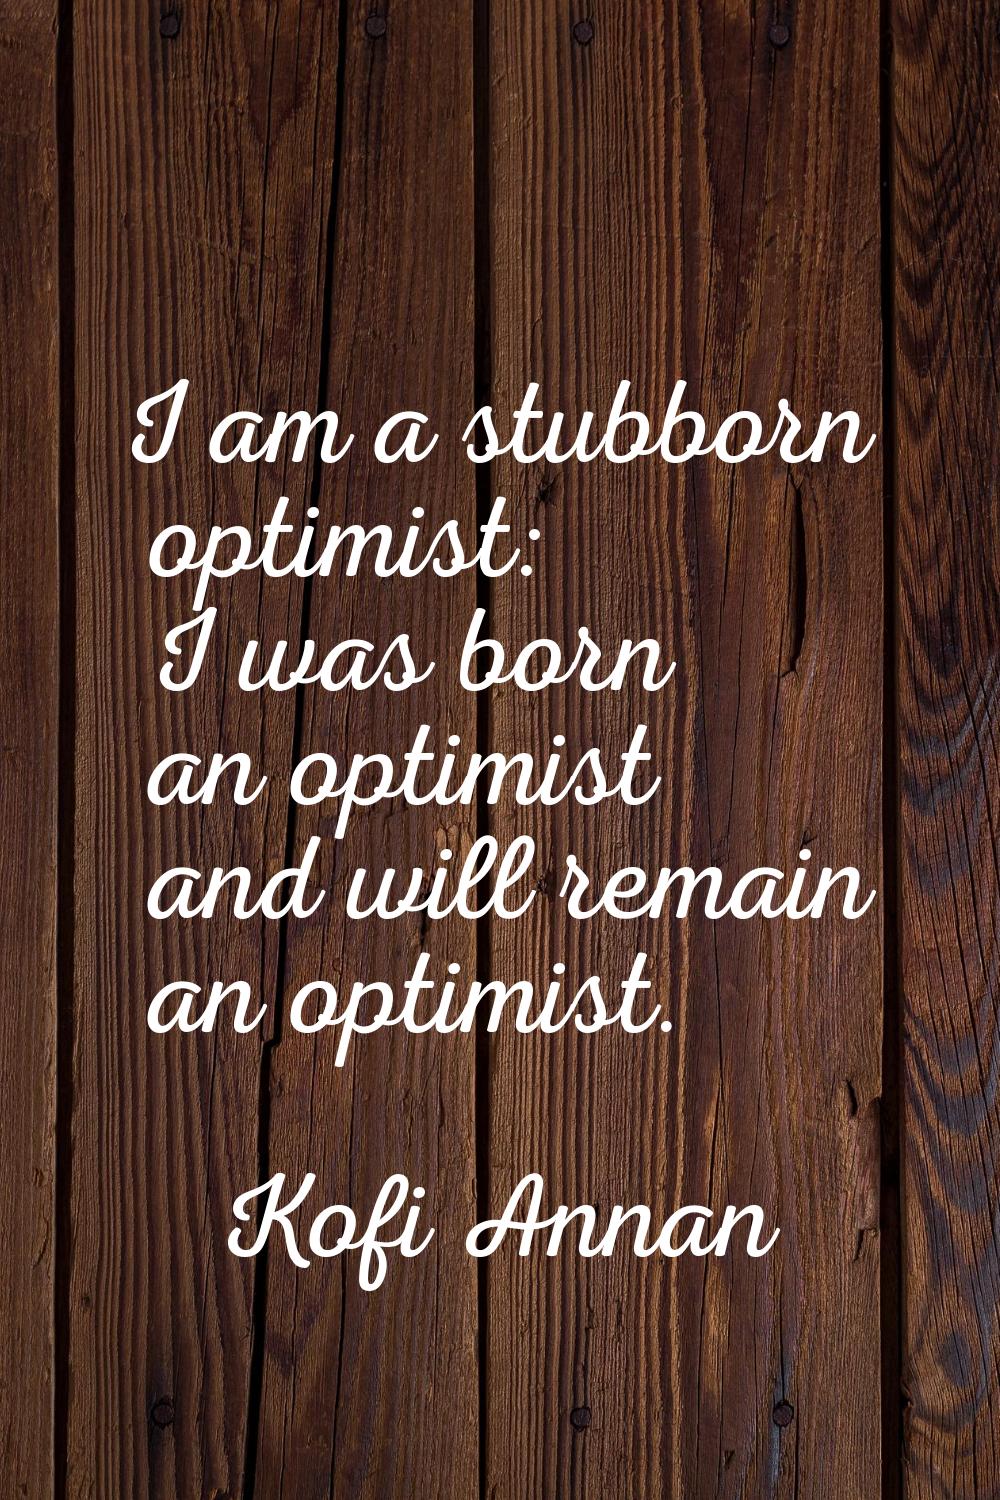 I am a stubborn optimist: I was born an optimist and will remain an optimist.